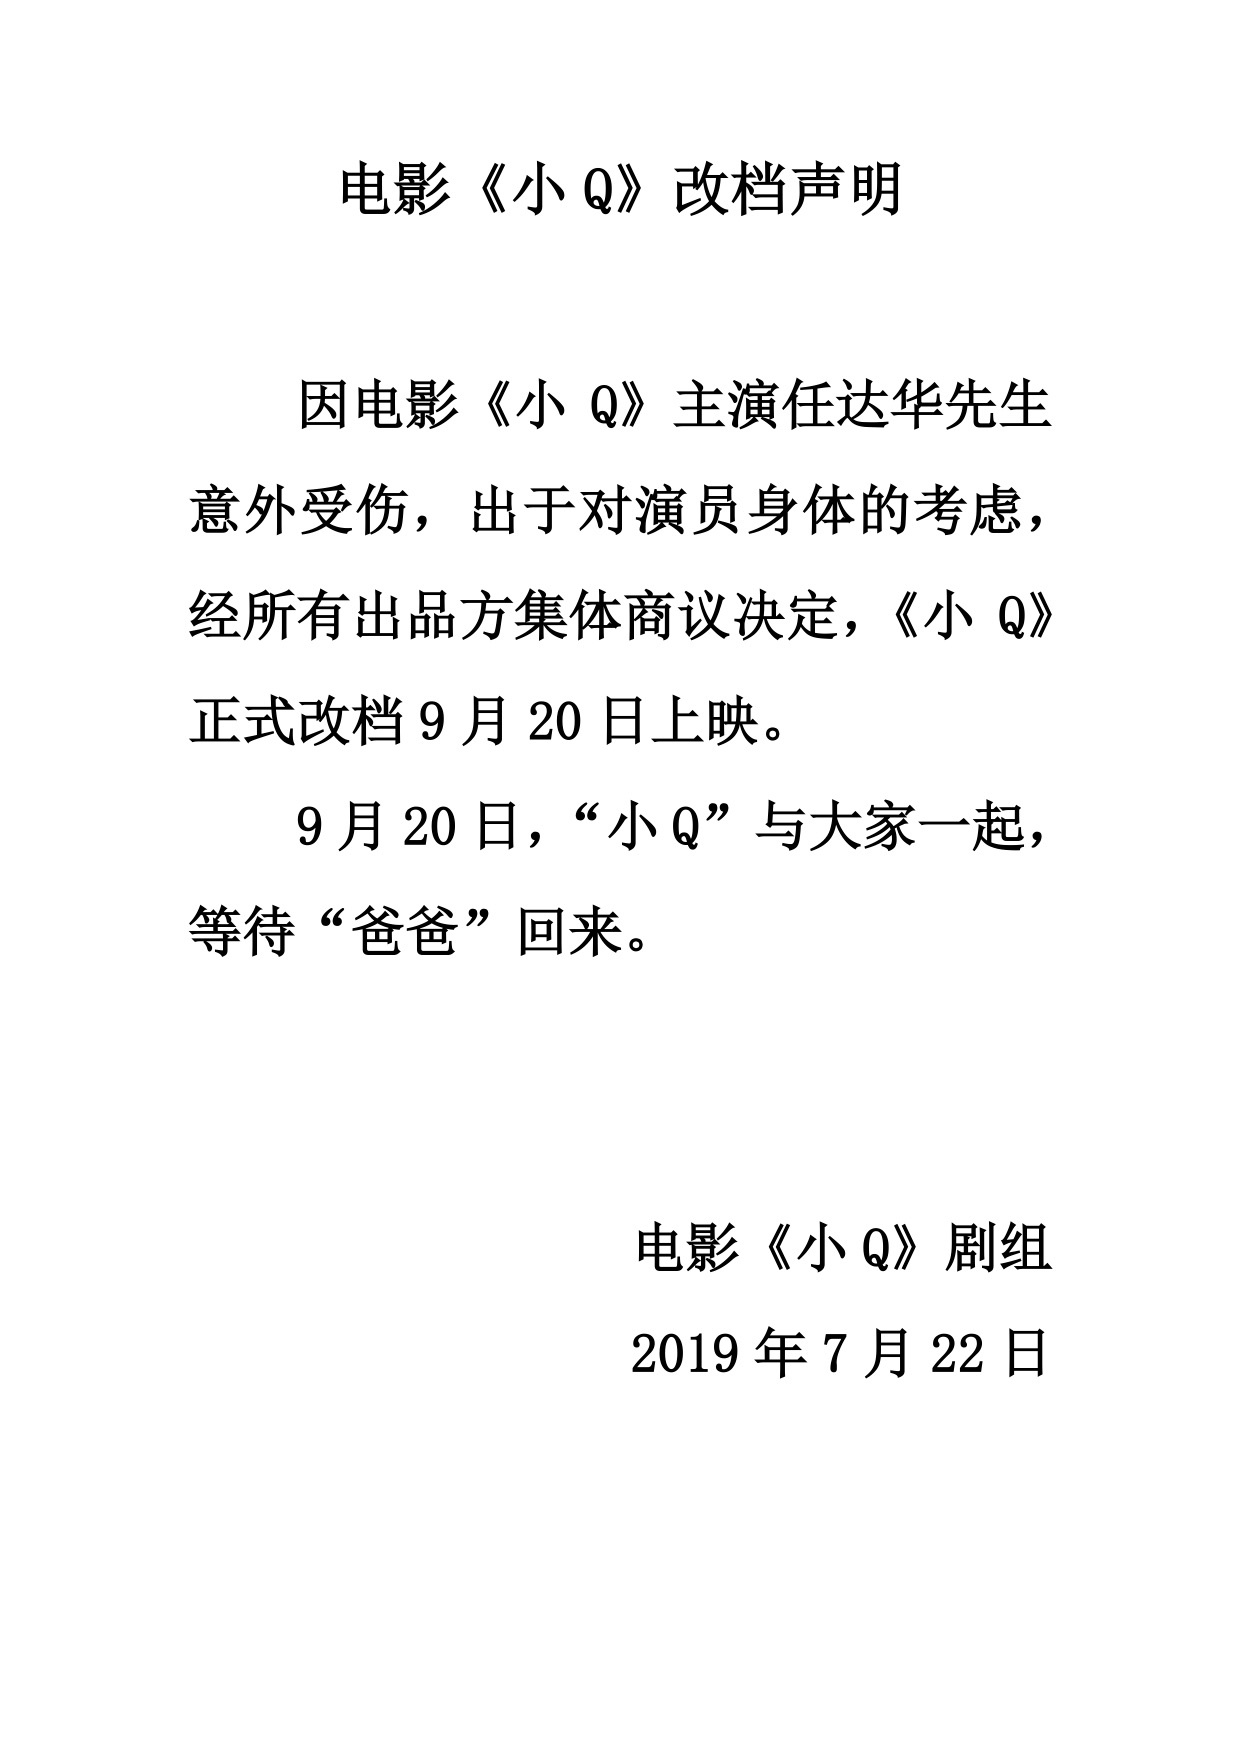 主演任达华遇袭受伤 《小Q》延迟至9月20日上映